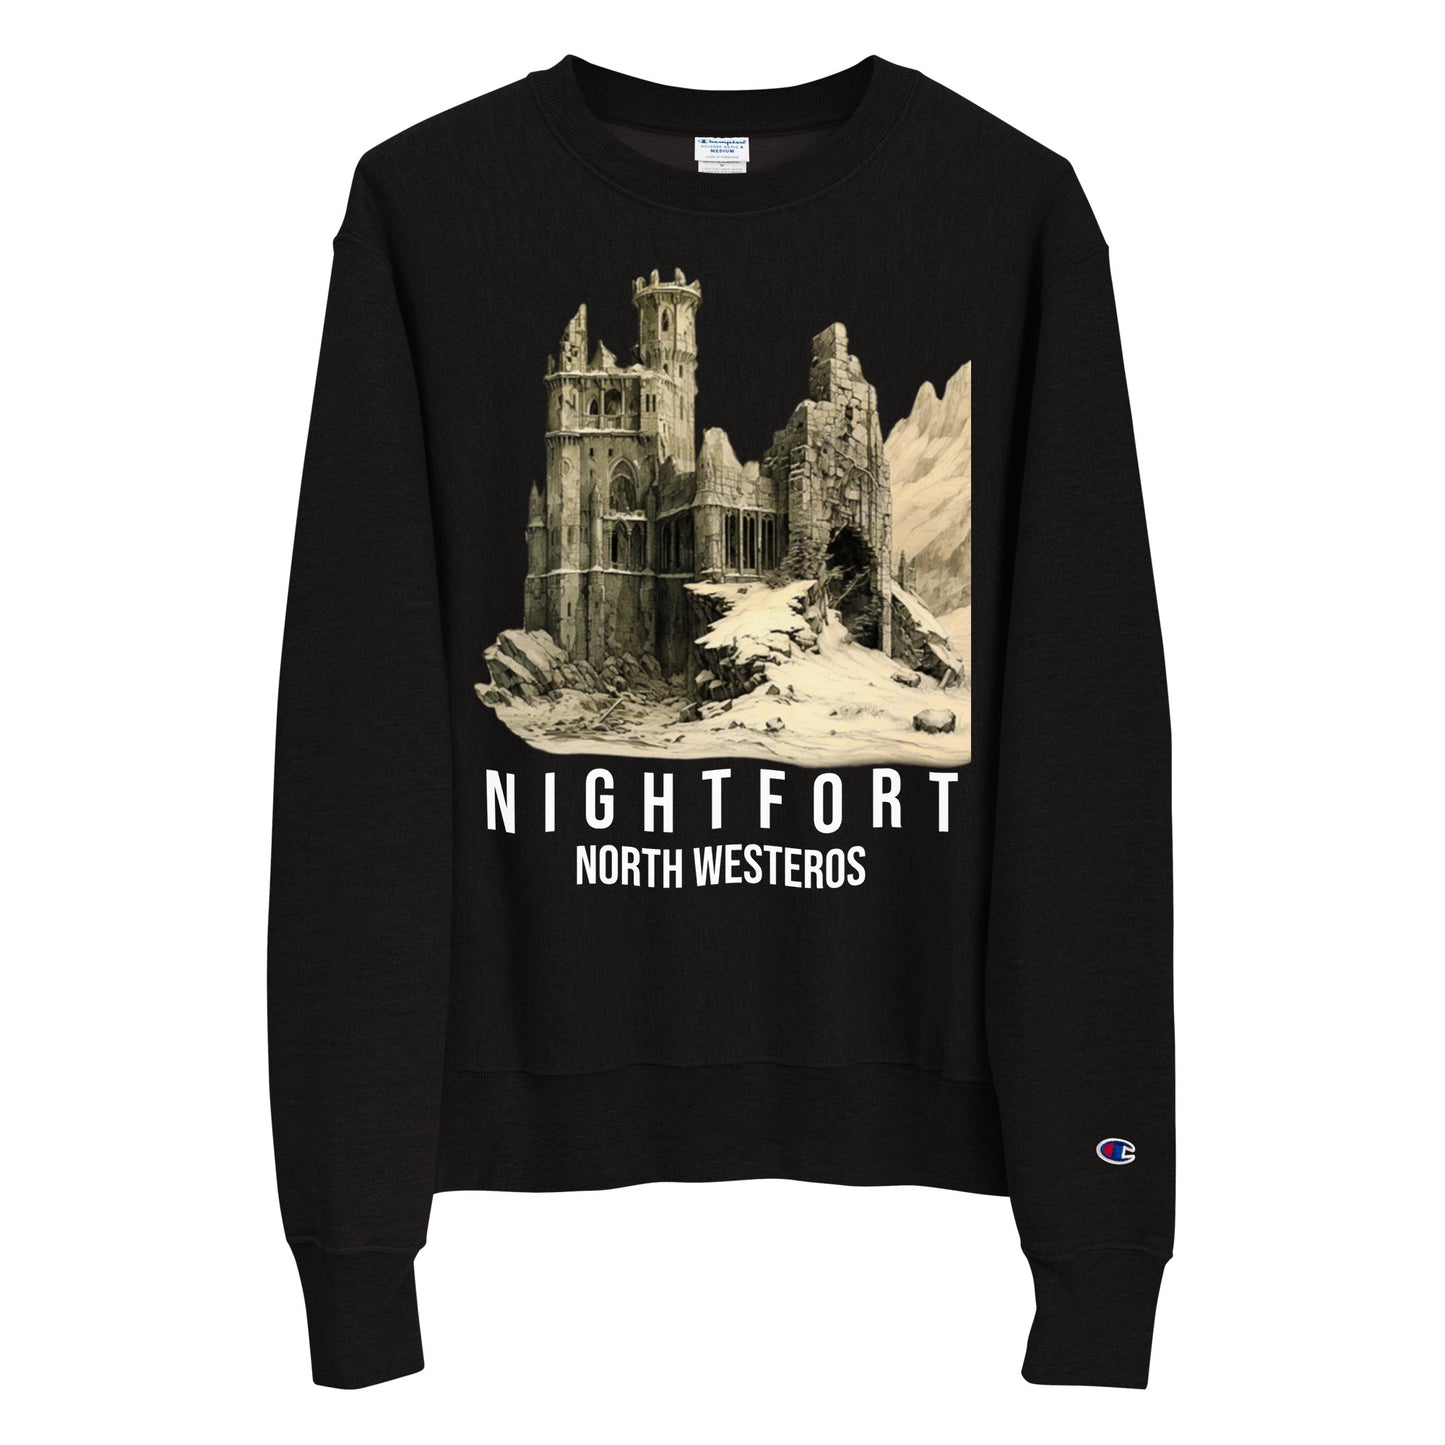 Visit the Nightfort Sweatshirt